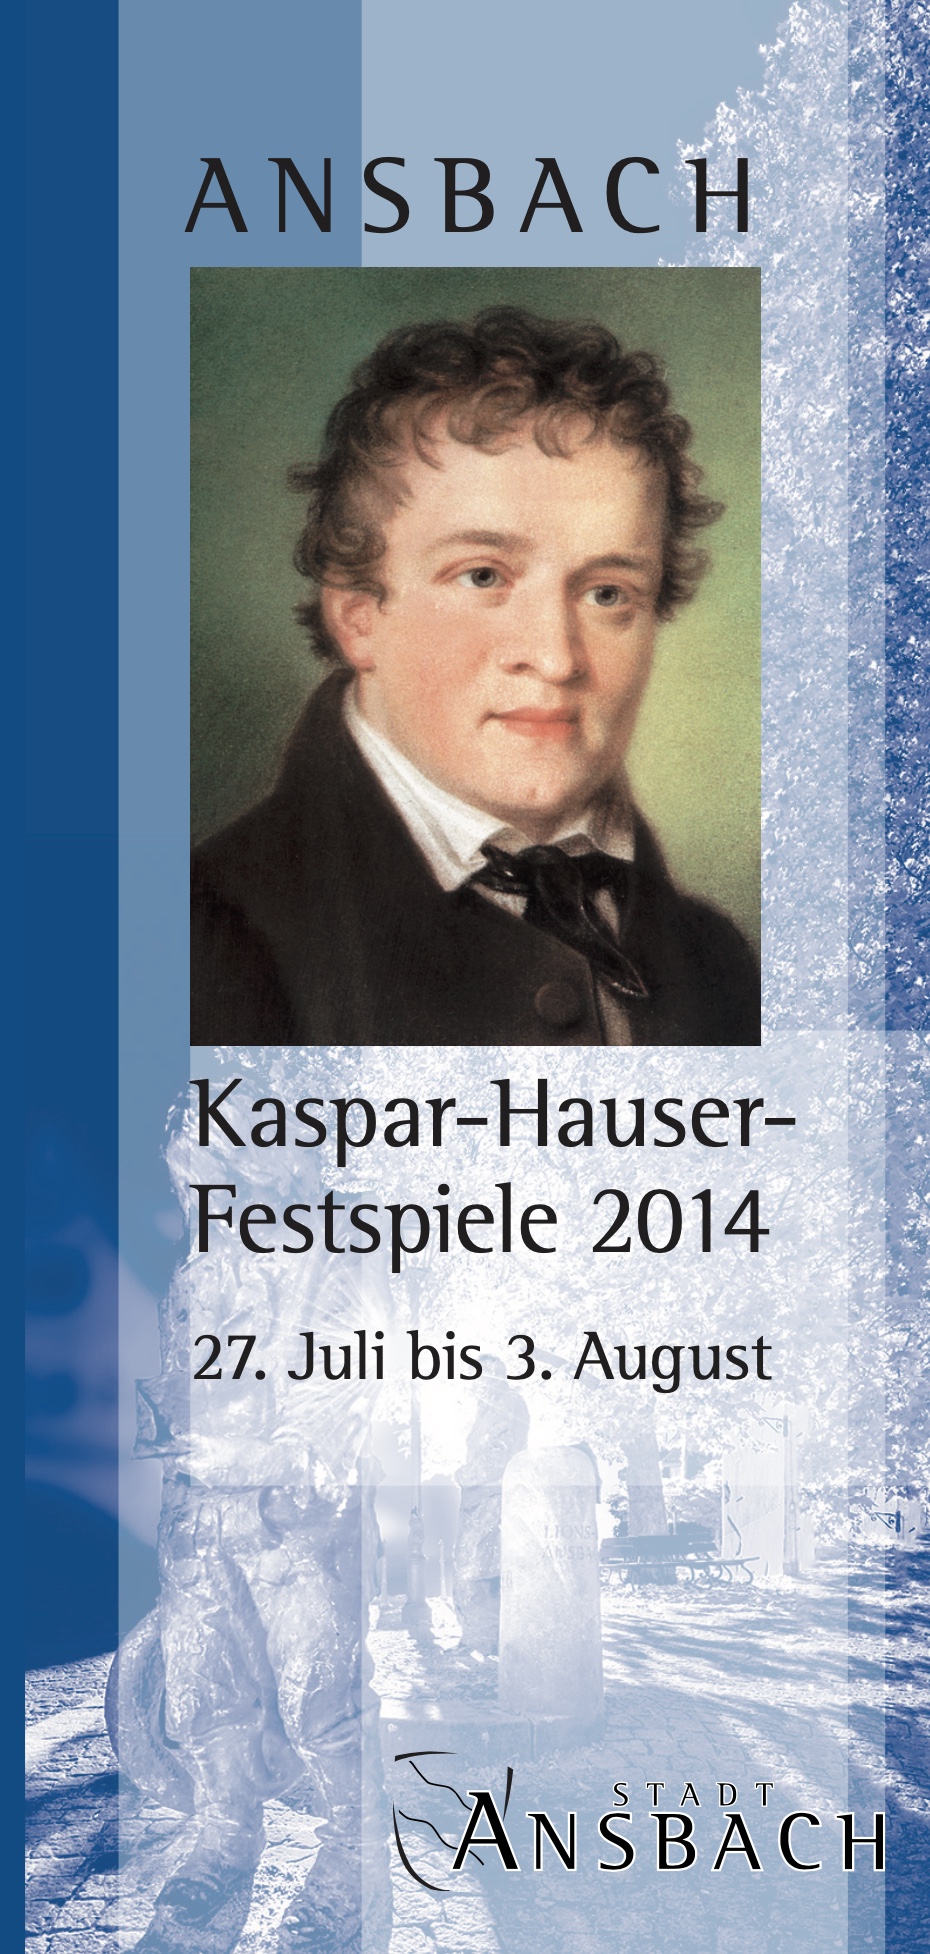 Kaspar-Hauser Festspiele 2014